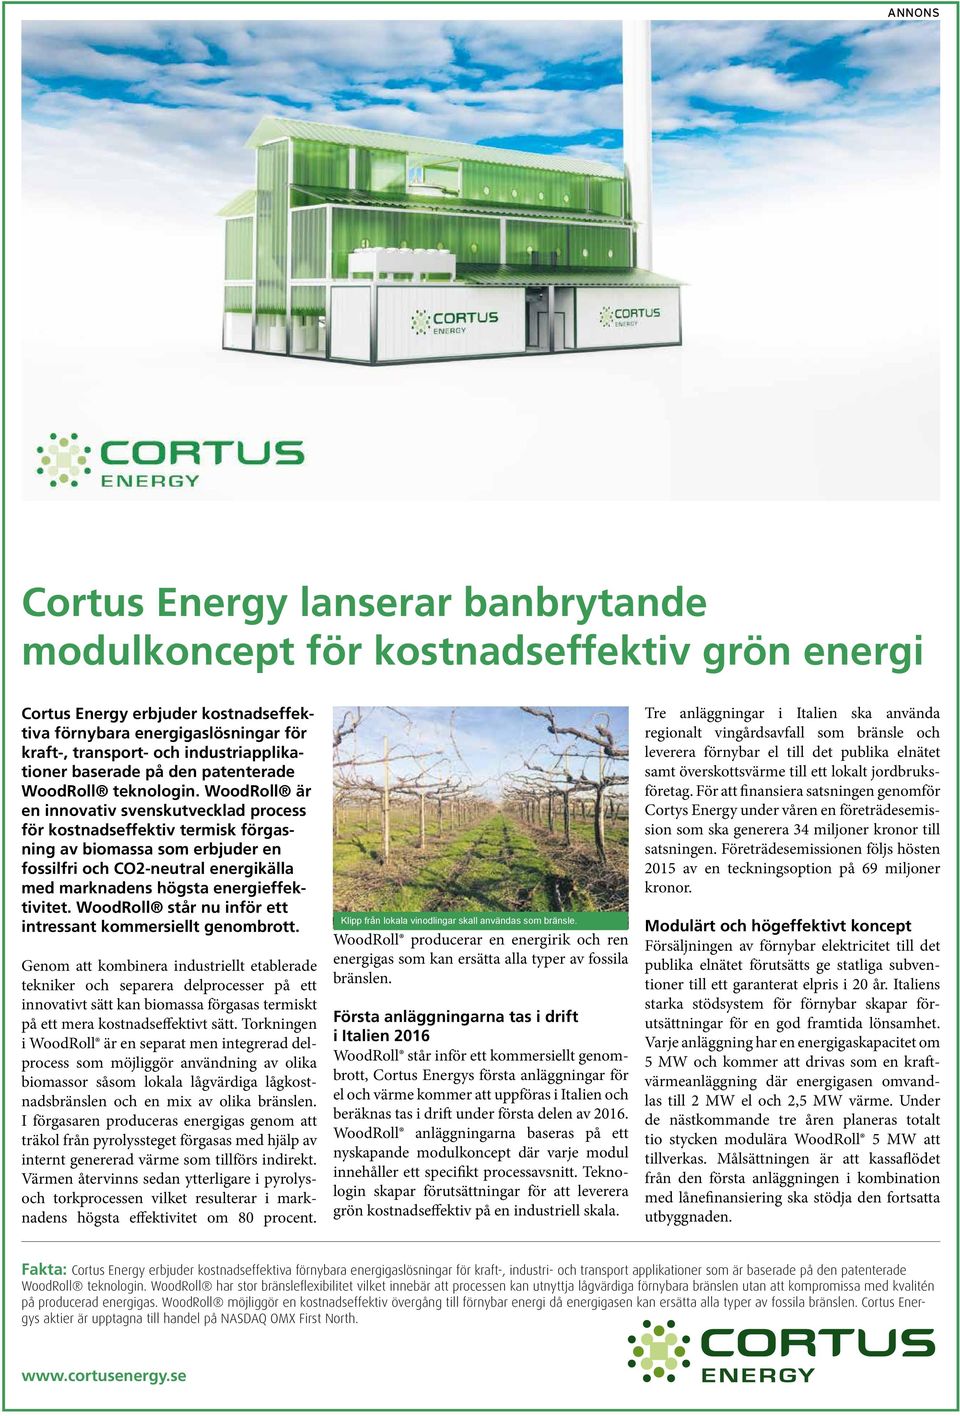 WoodRoll är en innovativ svenskutvecklad process för kostnadseffektiv termisk förgasning av biomassa som erbjuder en fossilfri och CO2-neutral energikälla med marknadens högsta energieffektivitet.